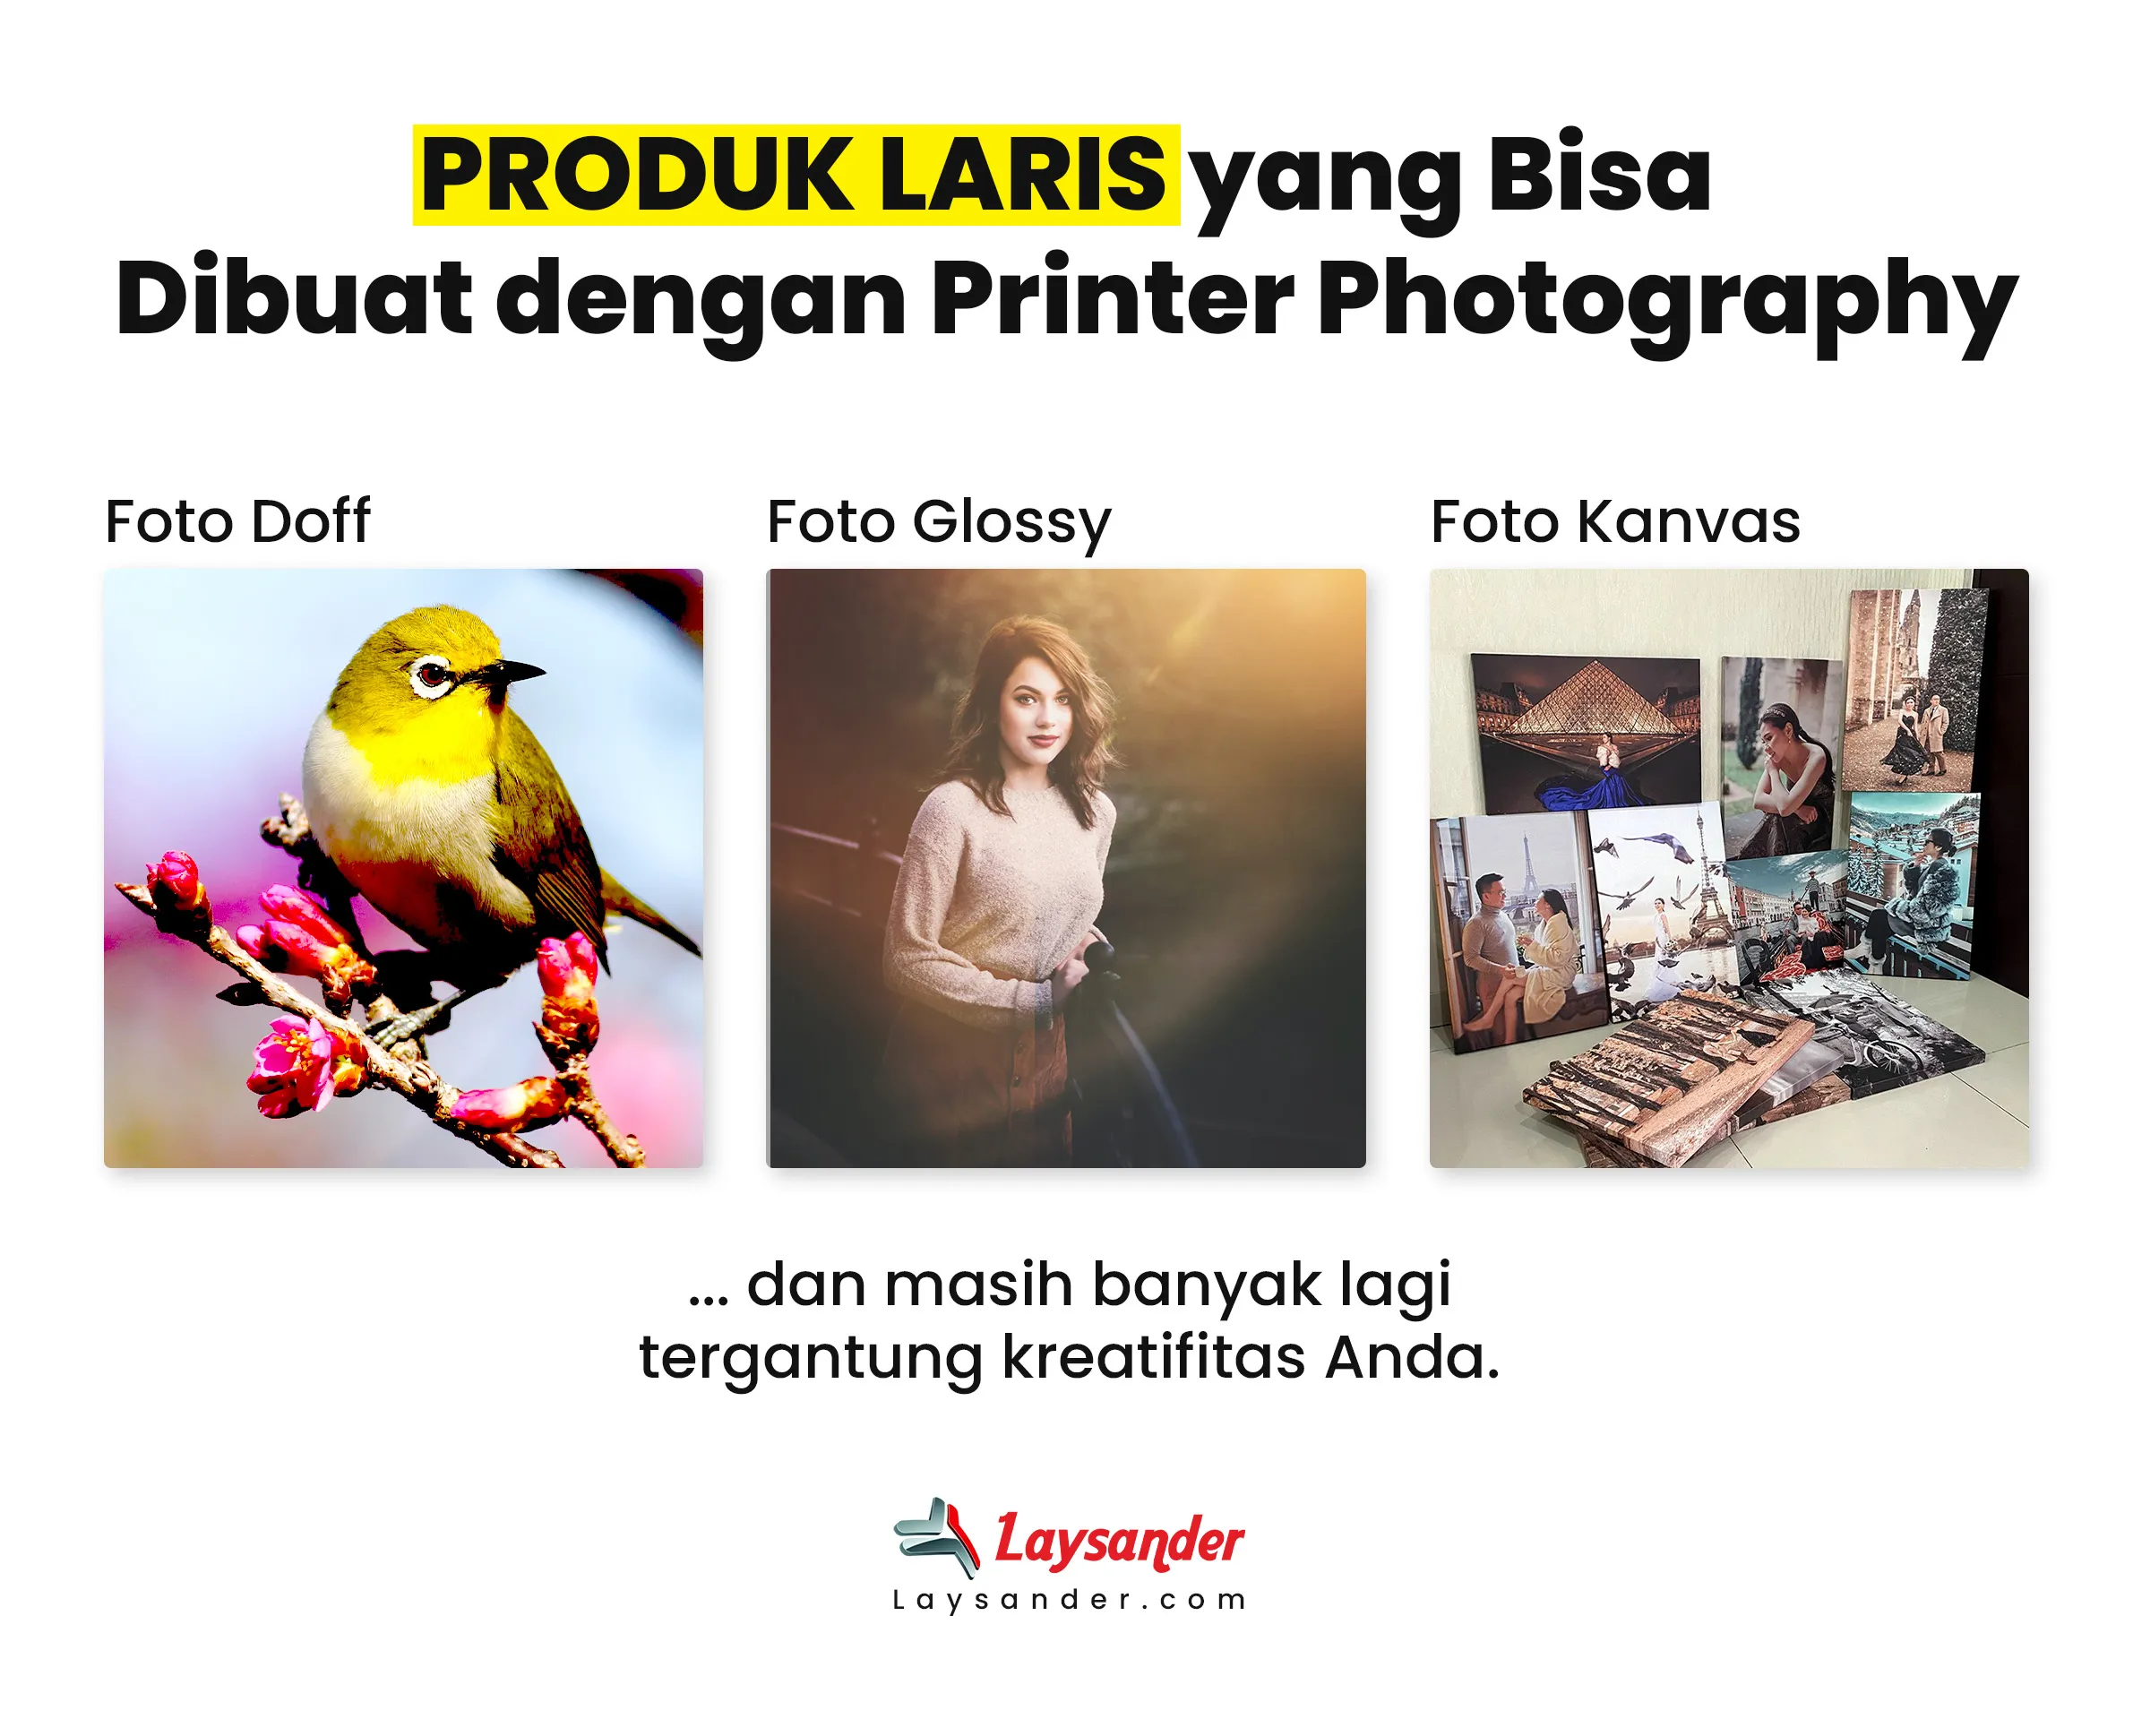 Produk Yang Bisa Diahasilkan Menggunakan Printer Photography Profesional - Laysander